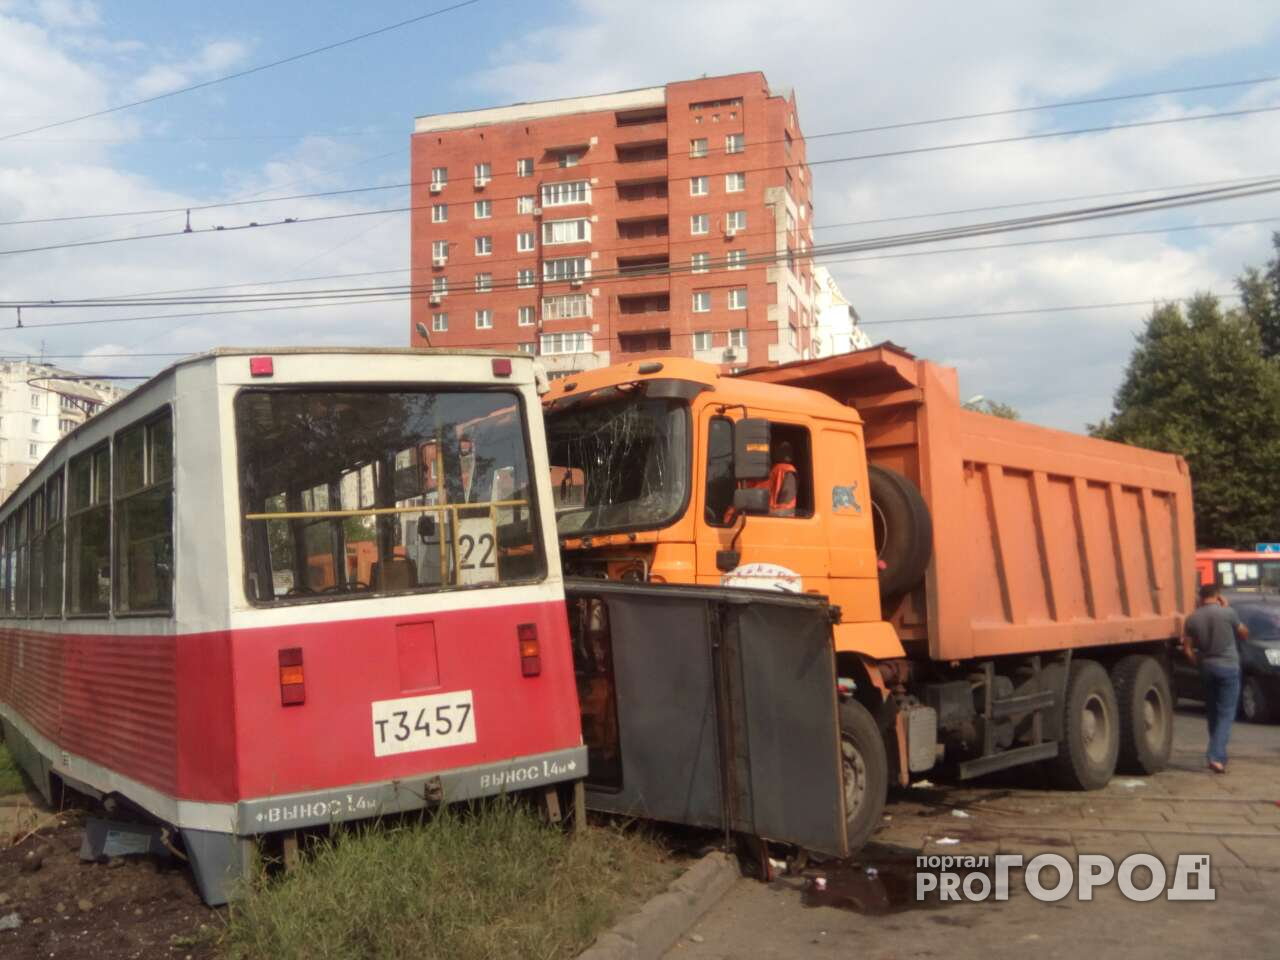 В Нижнем Новгороде большегруз снес трамвай: есть пострадавшие (фото)